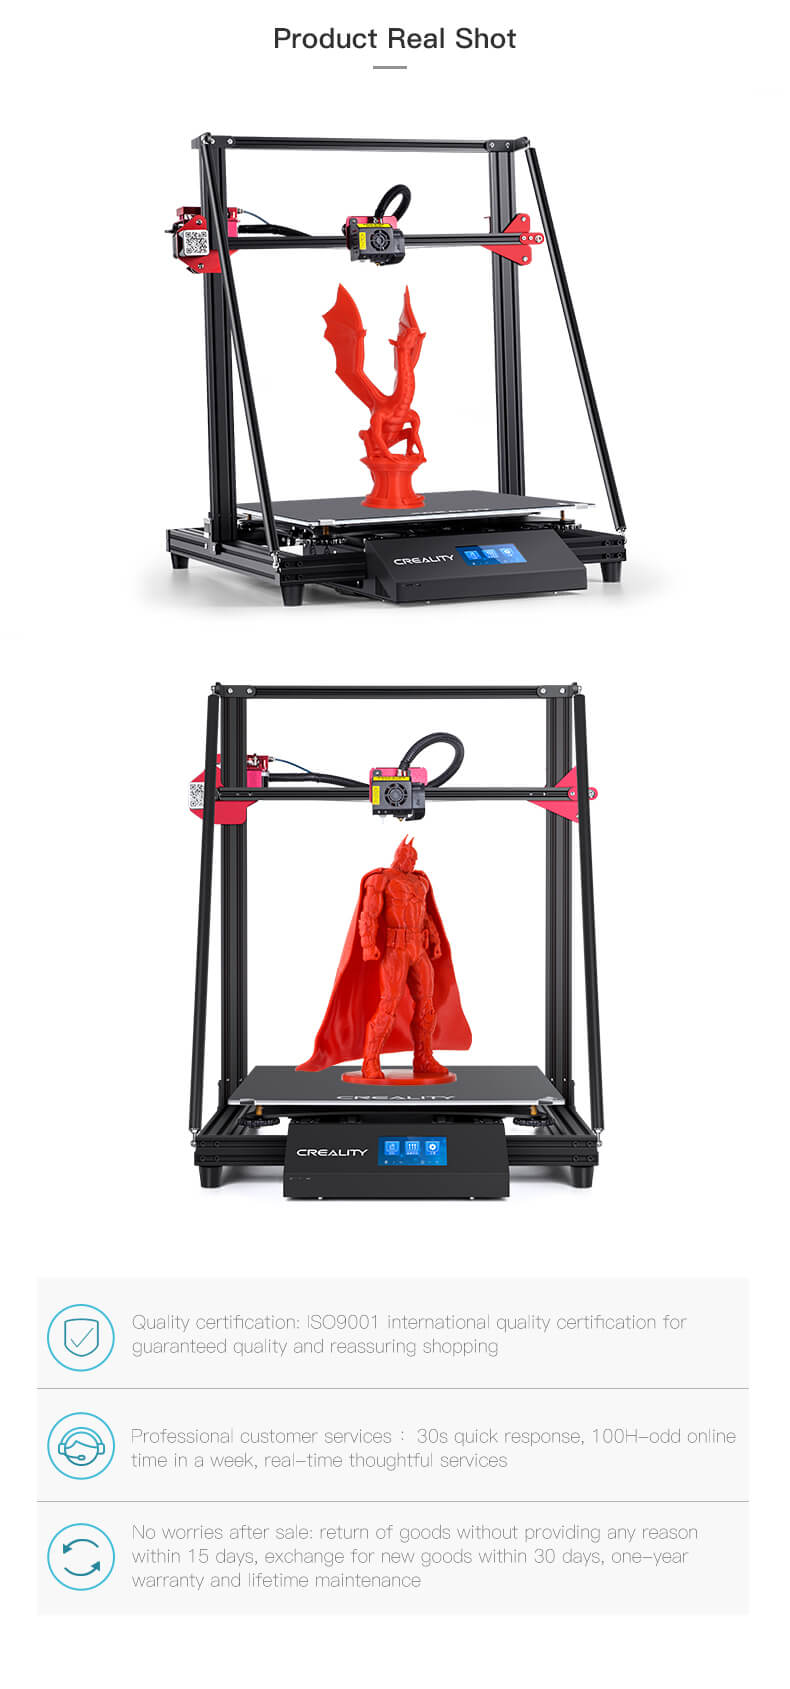 CR10 Max 3D Printer Qatar